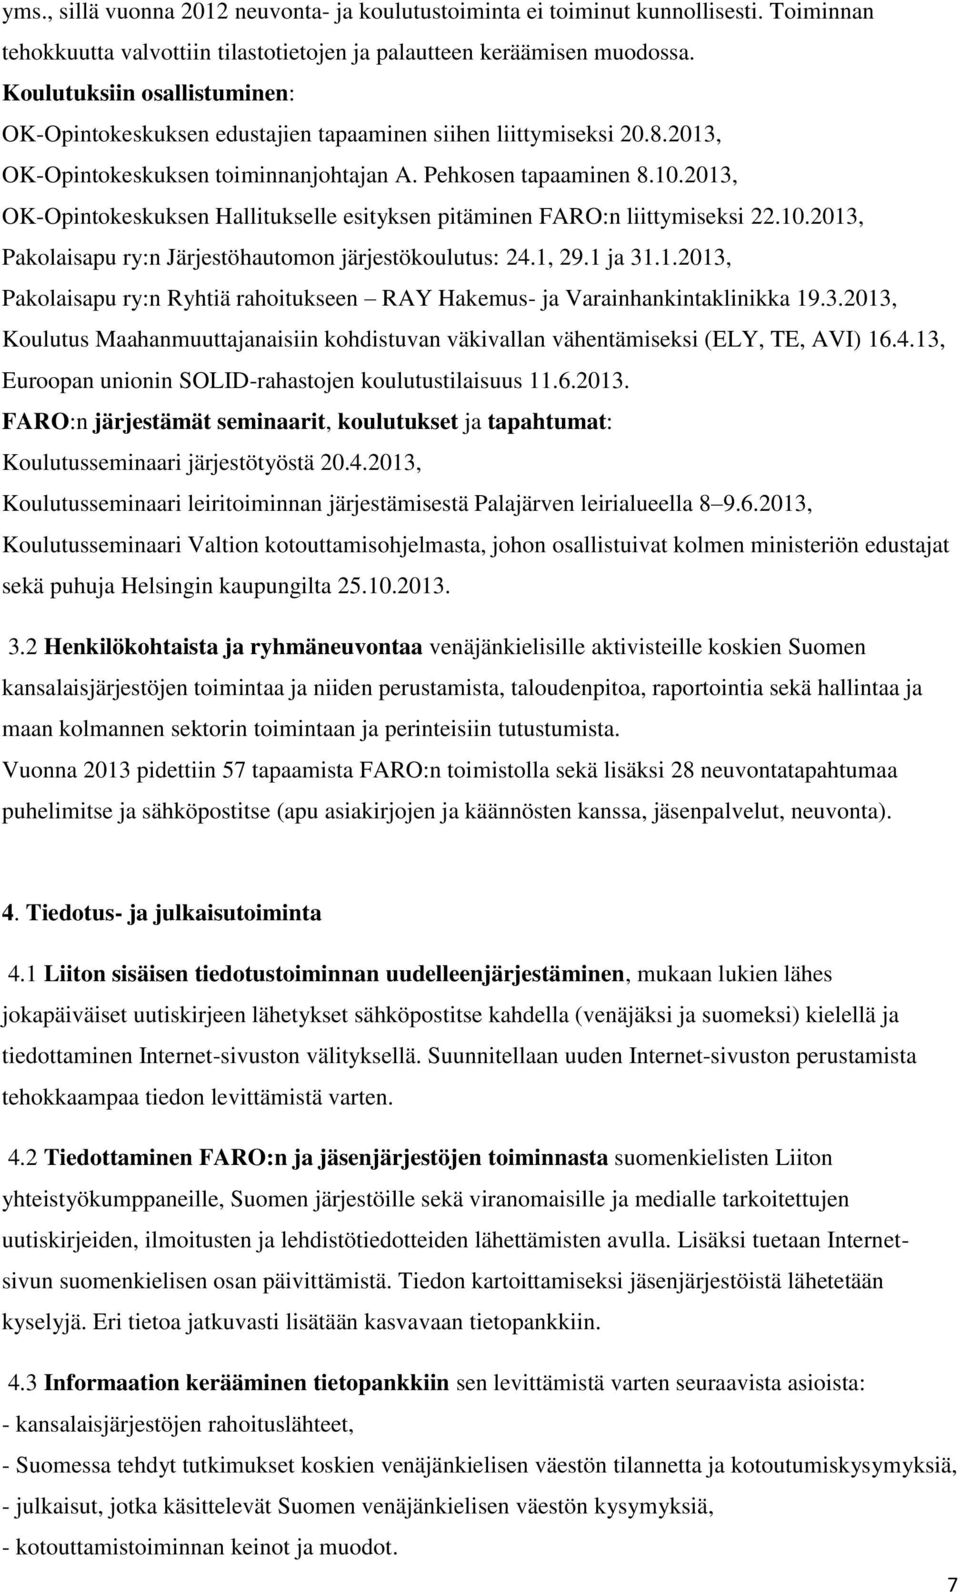 2013, OK-Opintokeskuksen Hallitukselle esityksen pitäminen FARO:n liittymiseksi 22.10.2013, Pakolaisapu ry:n Järjestöhautomon järjestökoulutus: 24.1, 29.1 ja 31.1.2013, Pakolaisapu ry:n Ryhtiä rahoitukseen RAY Hakemus- ja Varainhankintaklinikka 19.